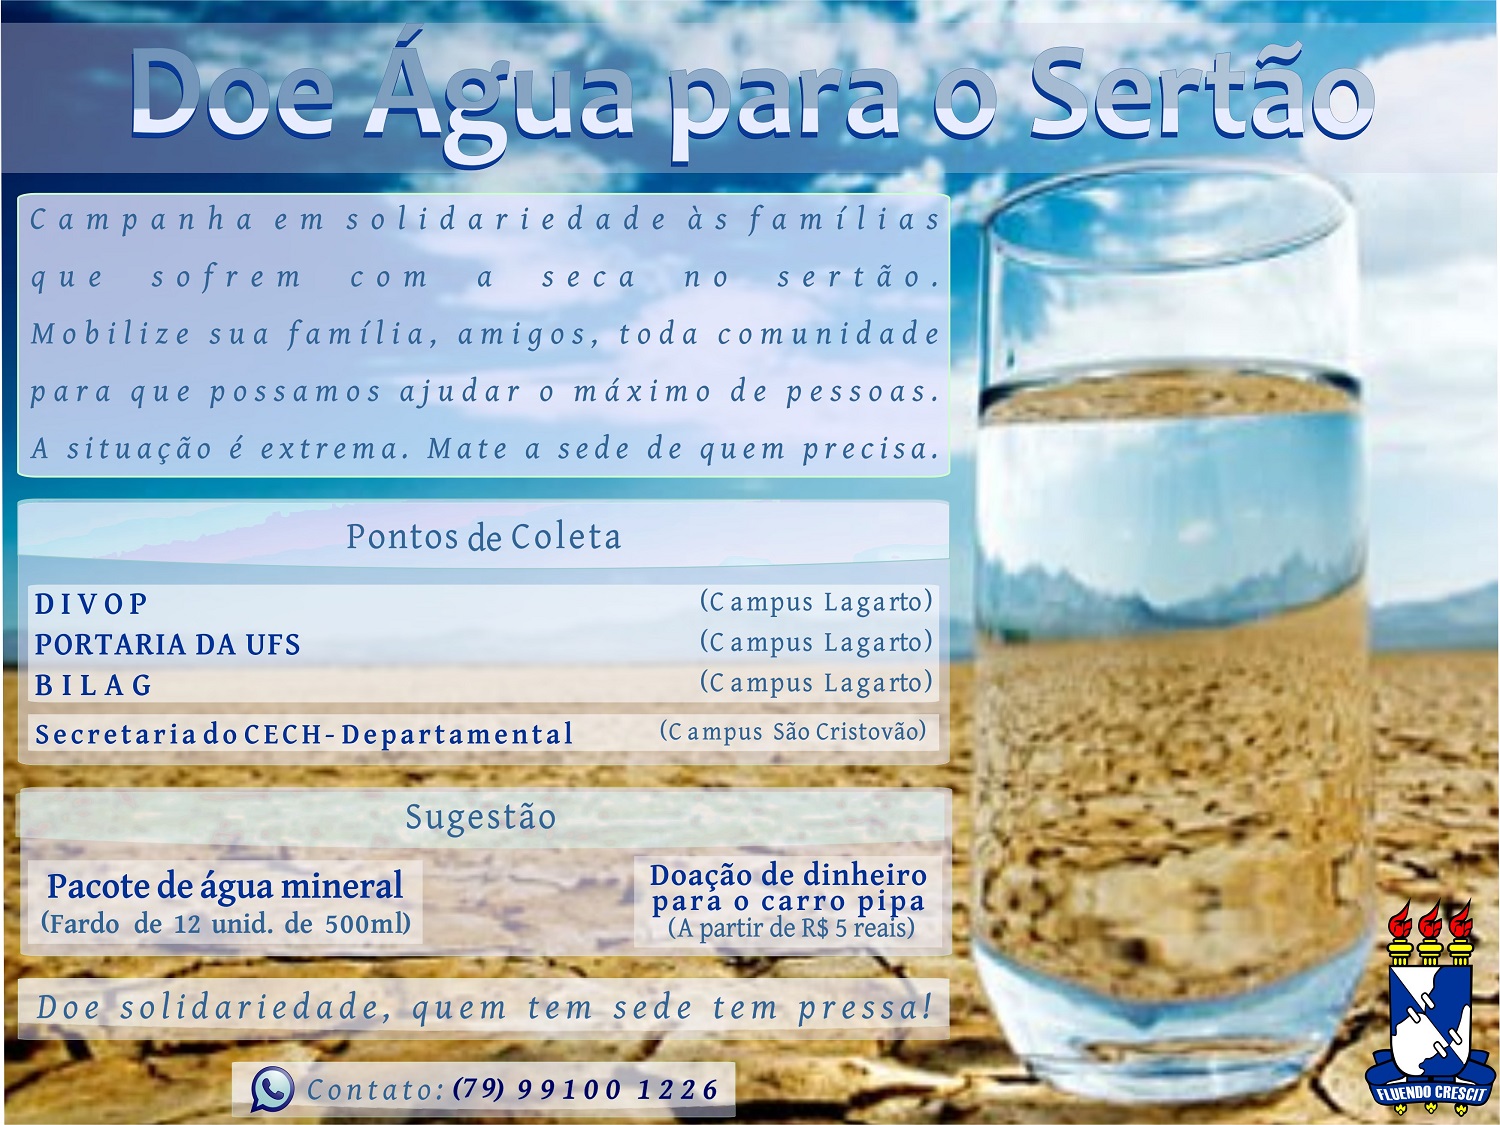 Cartaz da Campanha " Doe Água para o sertão"